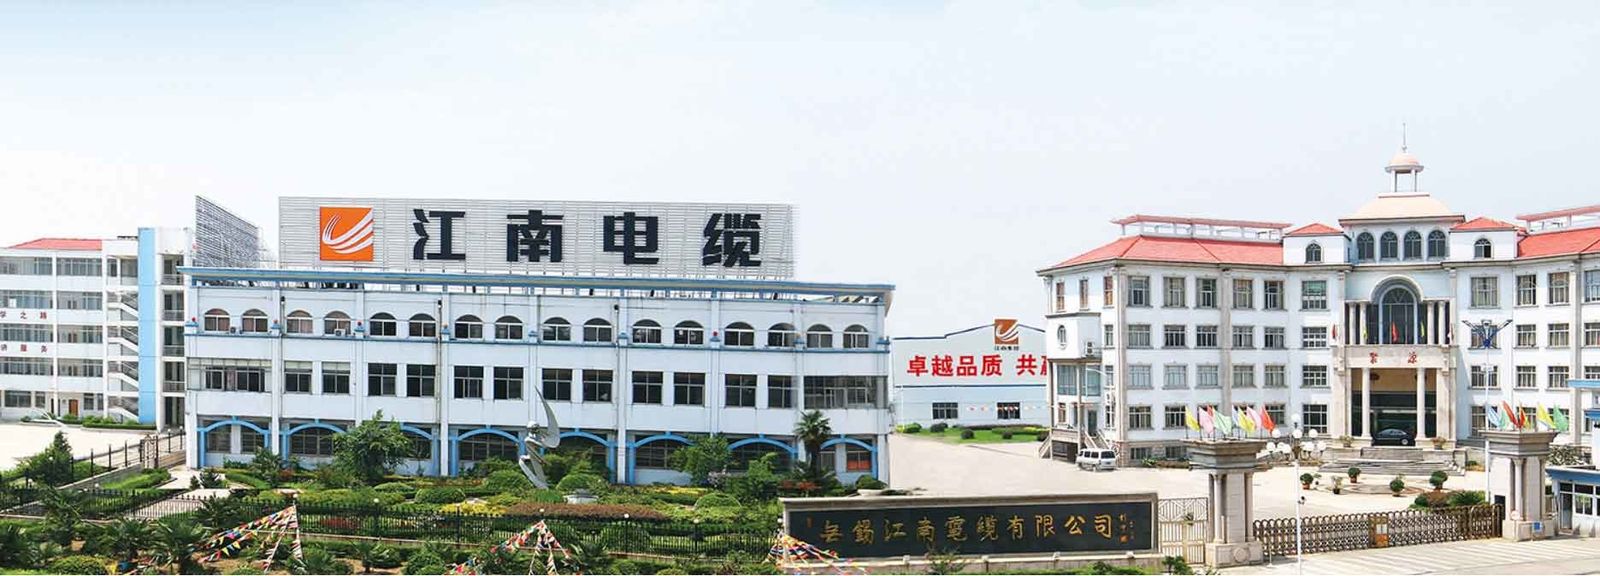 ประเทศจีน Shaoxing Jinxuan Metal Products Co., Ltd รายละเอียด บริษัท